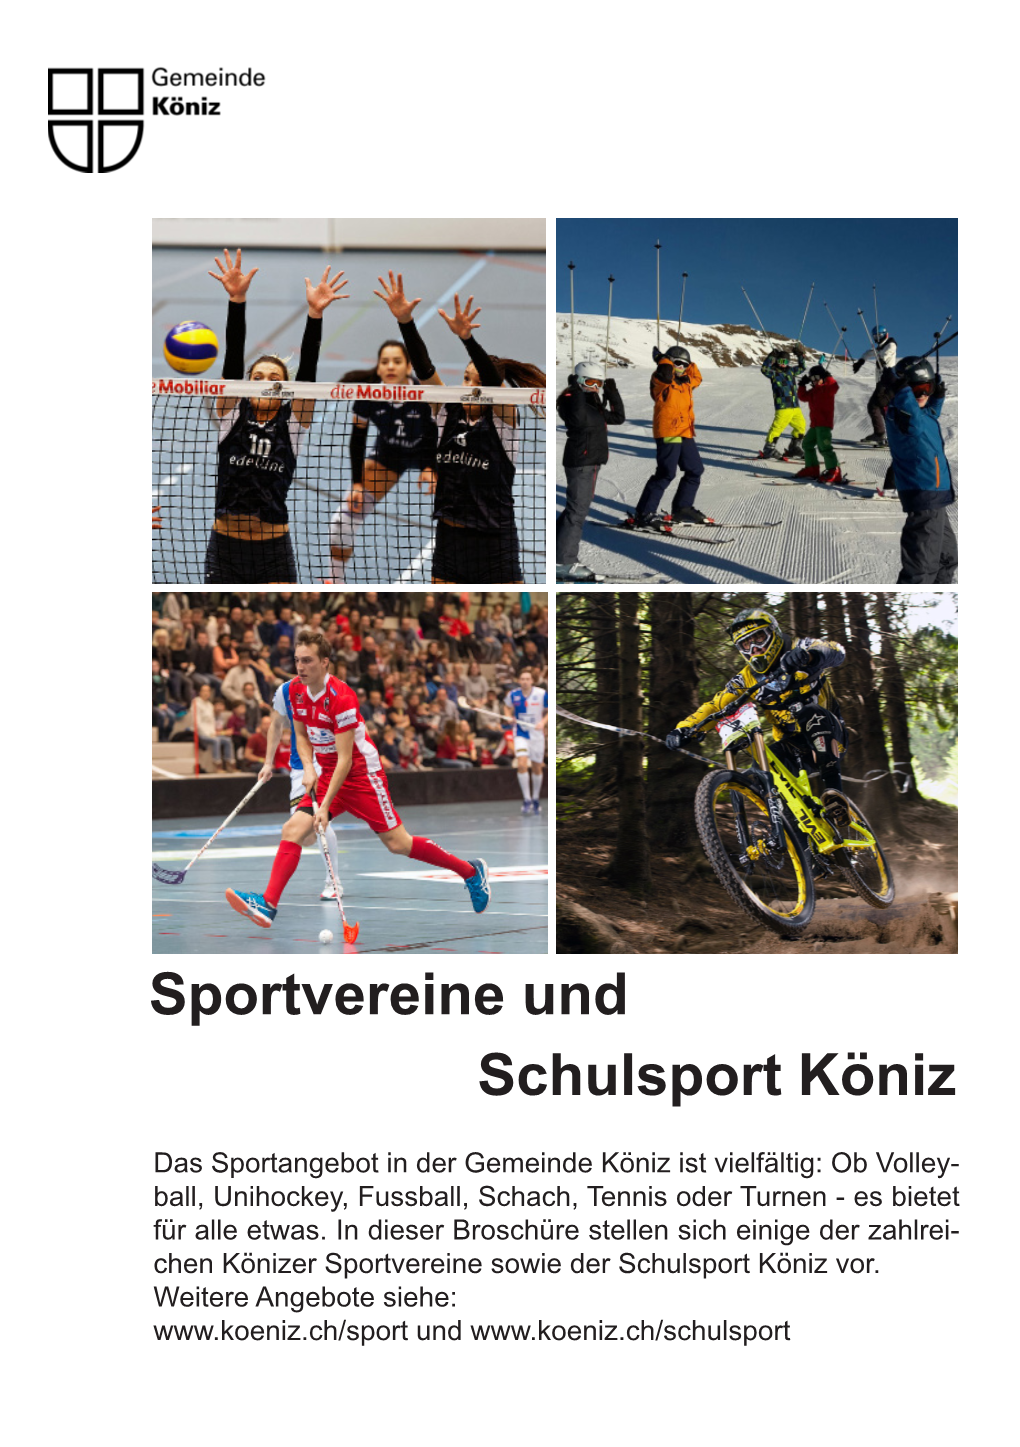 Sportvereine Und Schulsport Köniz